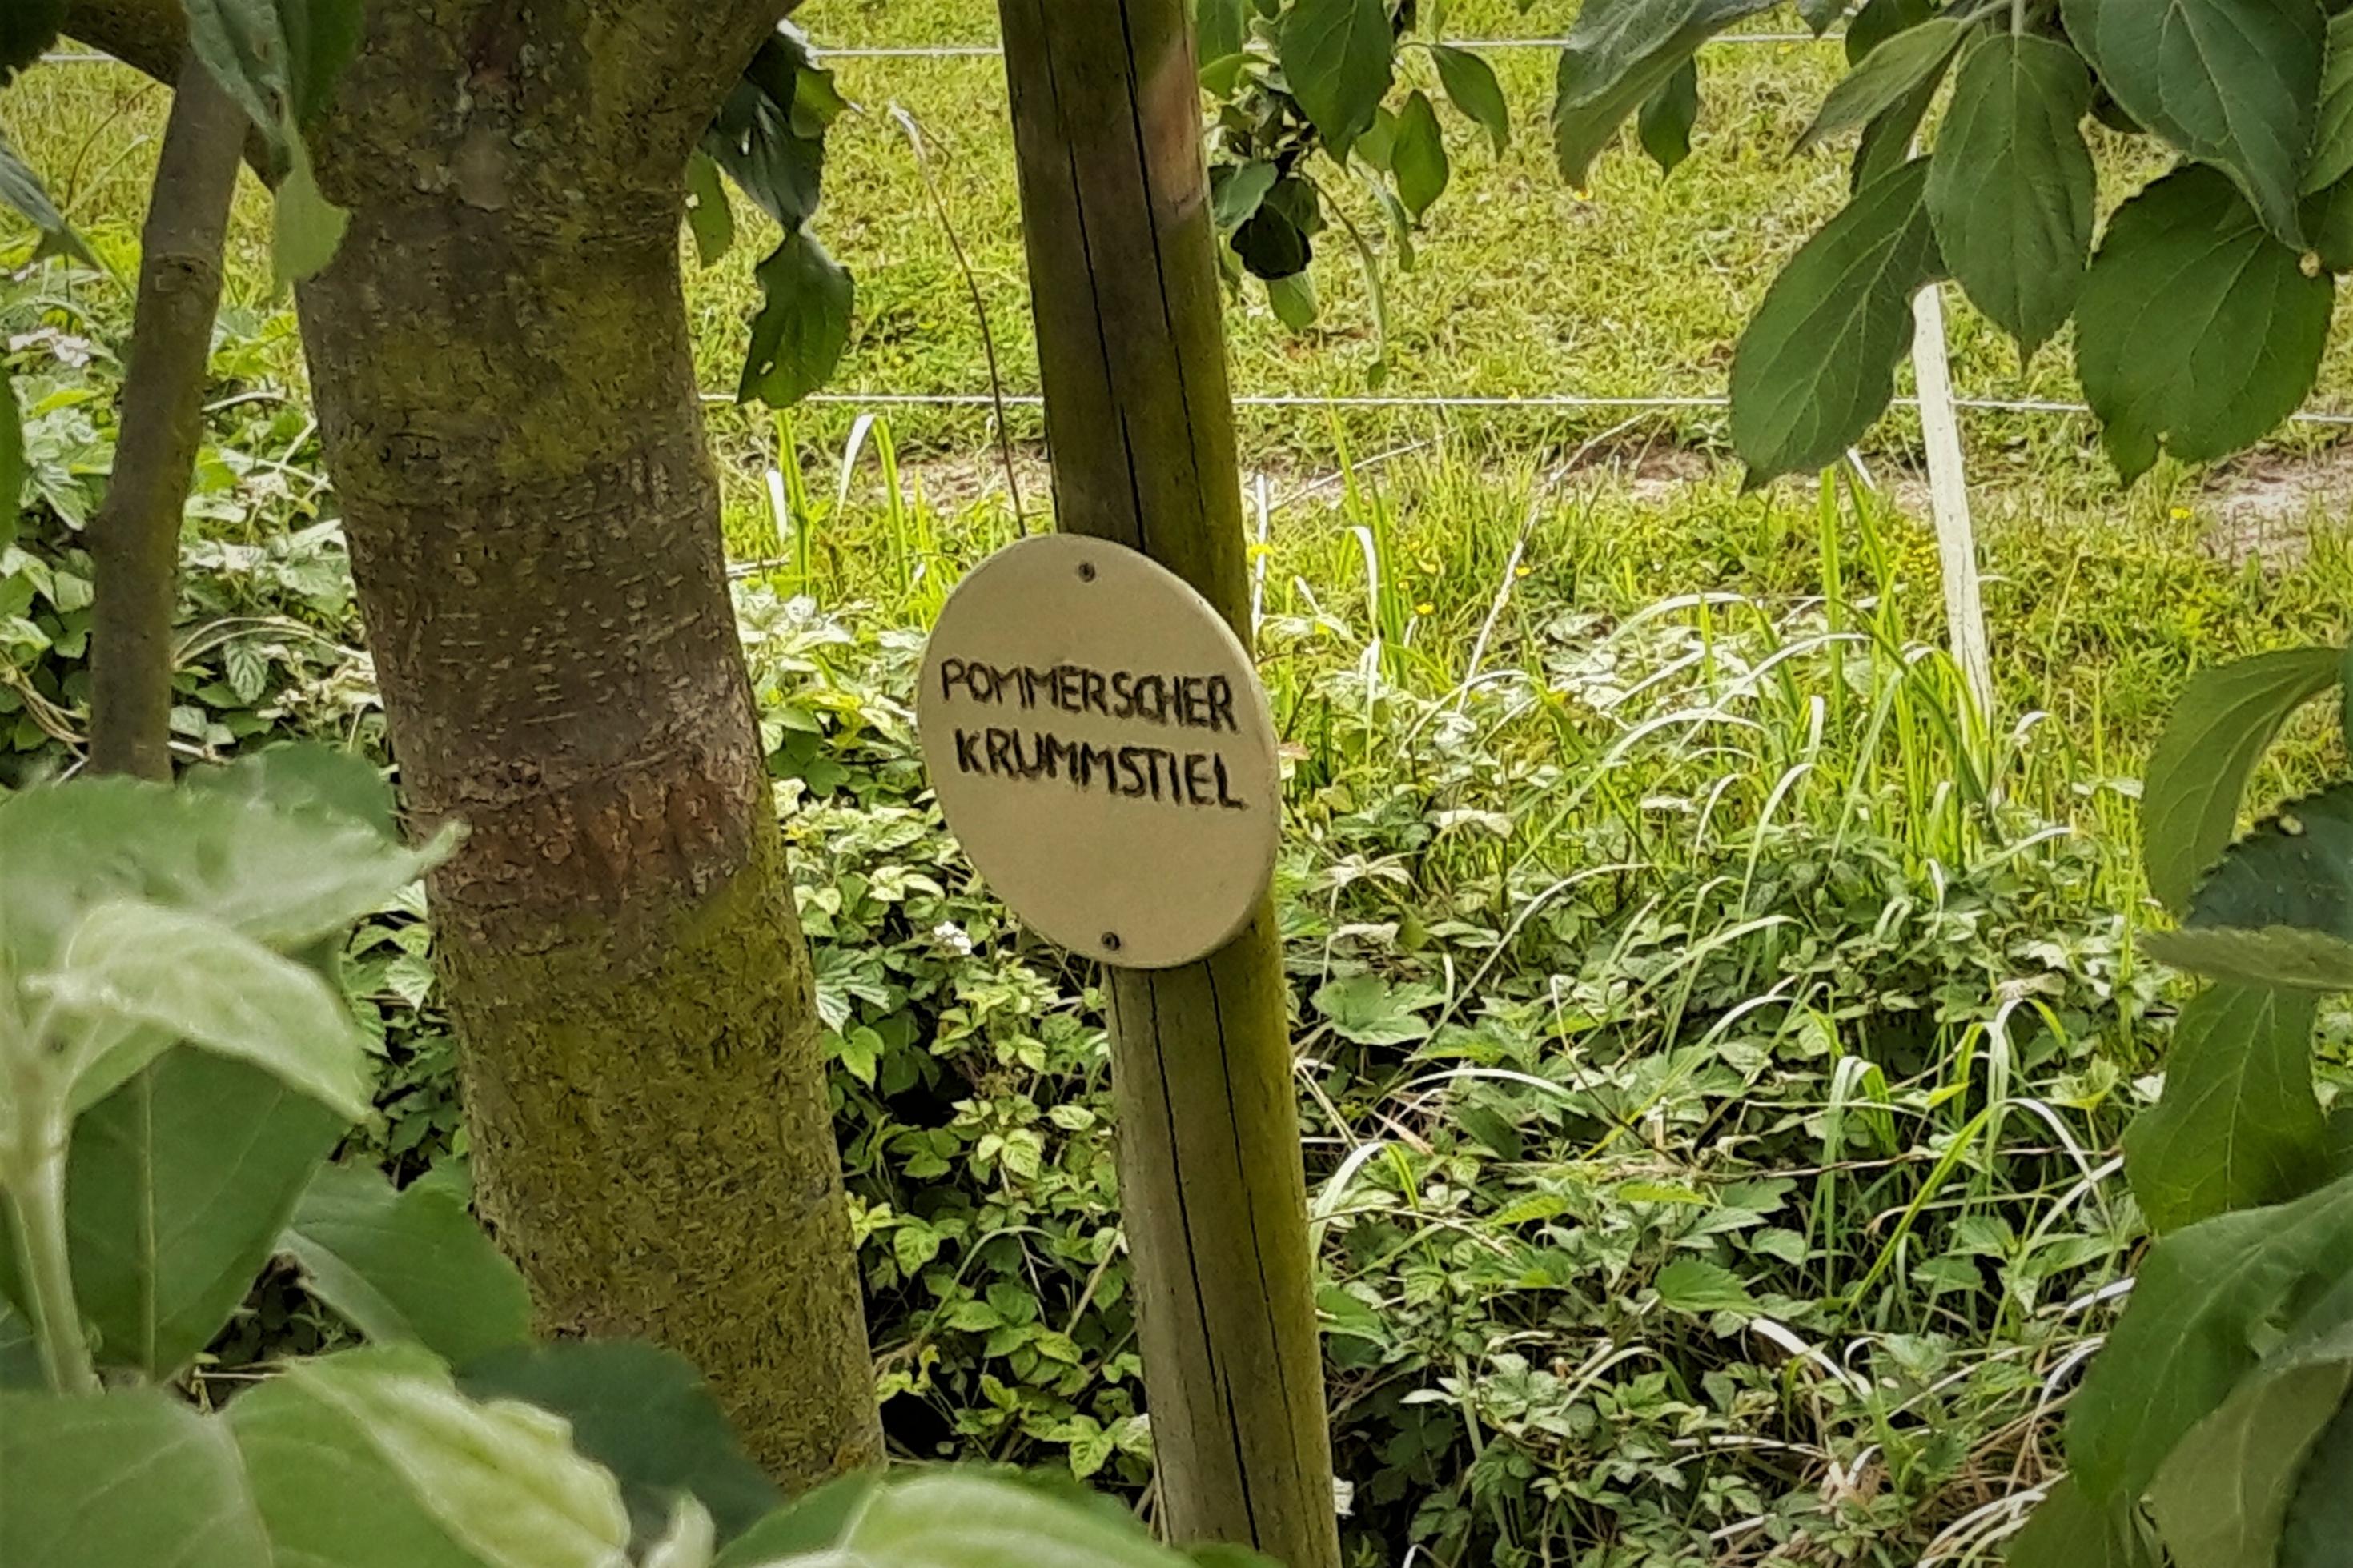 Holztäfelchen mit dem Namen der Apfelsorte, angebracht neben dem Stamm, hinter dem eine grüne Wiese schimmert.